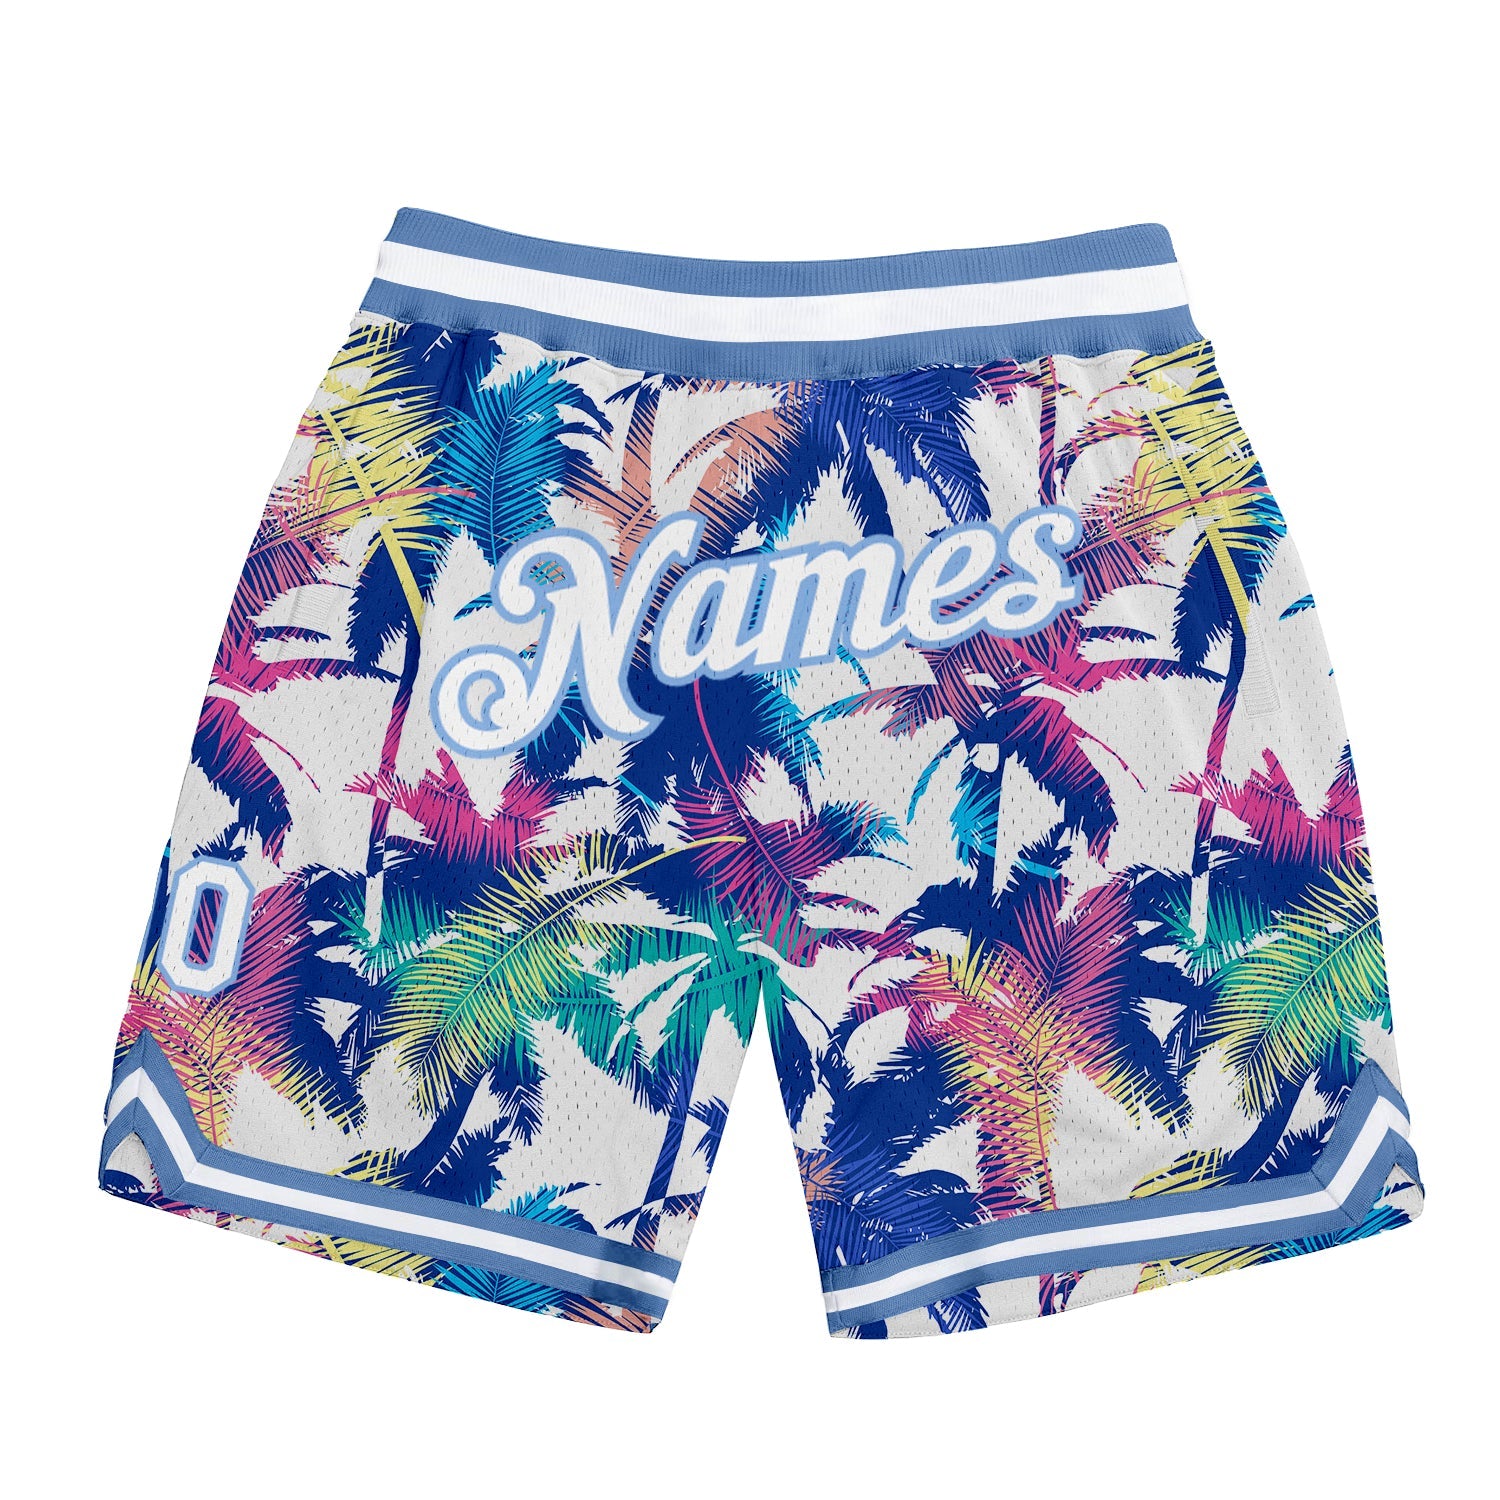 Shorts de basquete autênticos com design de padrão 3D branco branco-claro azul personalizado com palmeiras